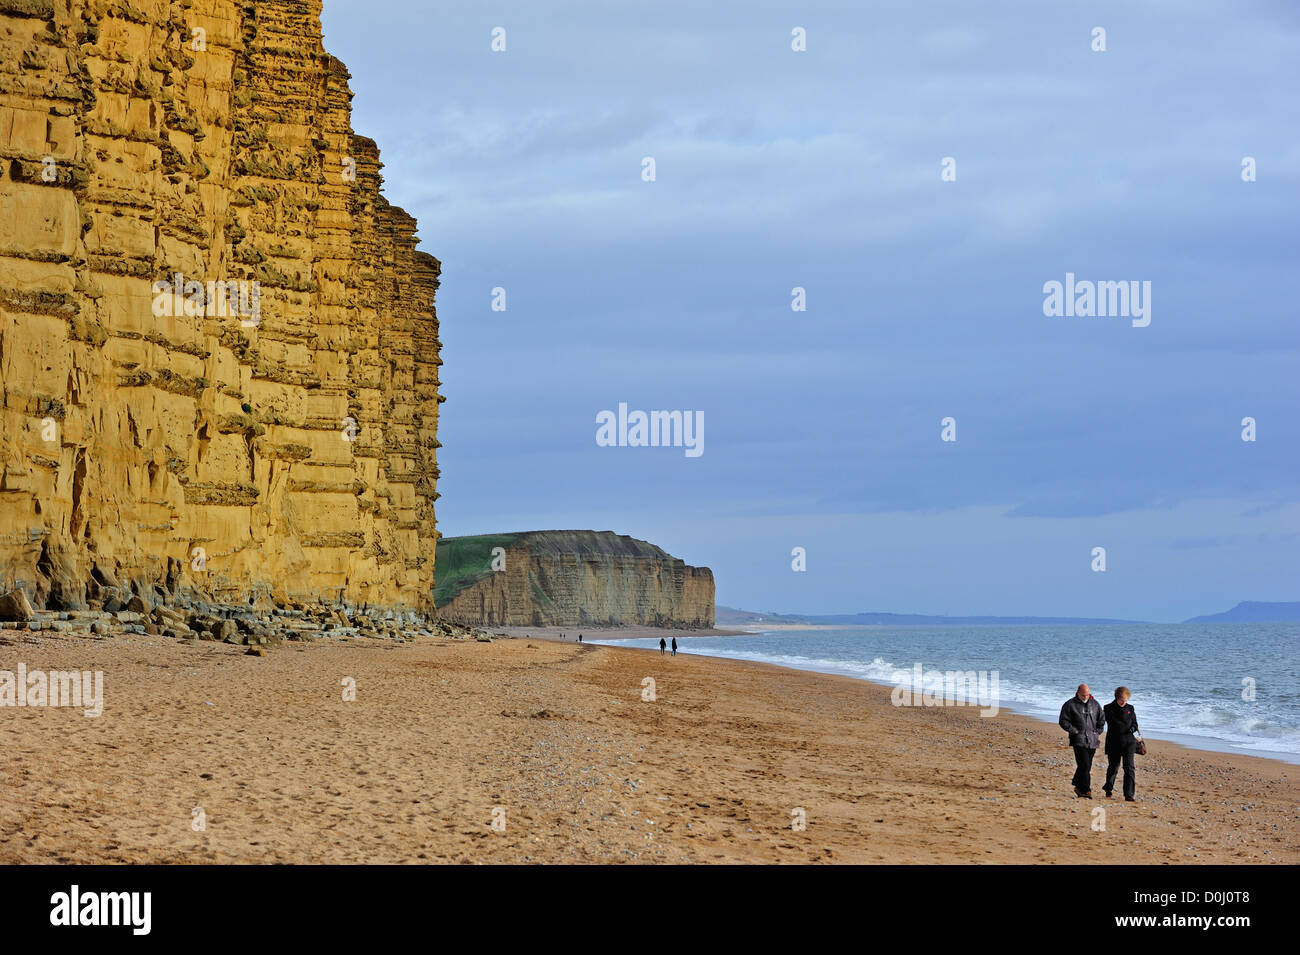 Gli escursionisti a piedi sulla spiaggia di East Cliff, in pietra arenaria, vicino al West Bay lungo la Jurassic Coast, Dorset, Inghilterra meridionale, Regno Unito Foto Stock